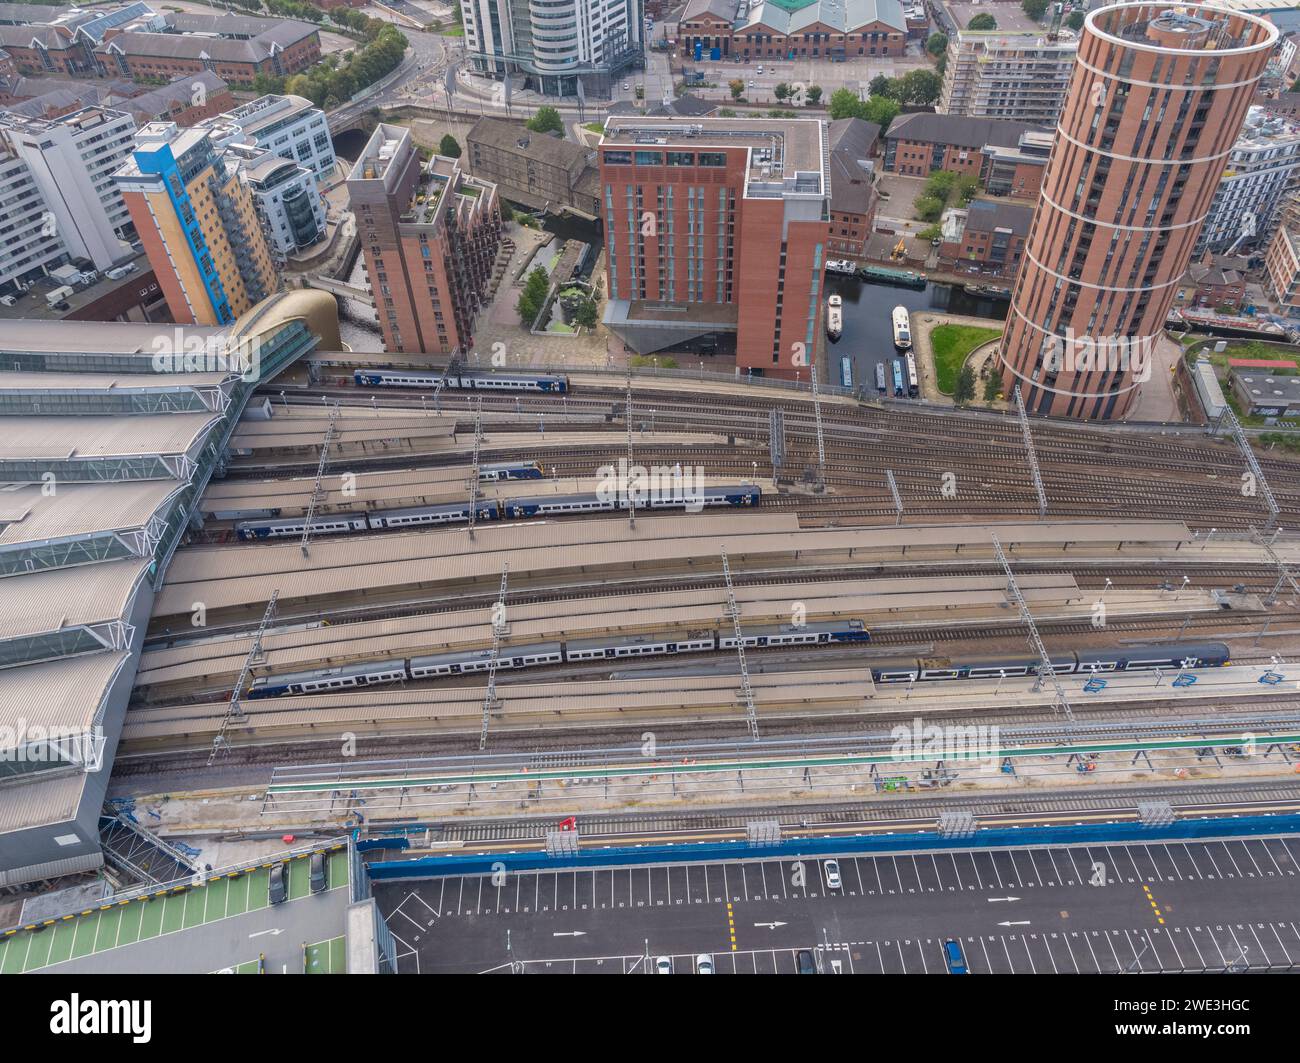 Immagine aerea di piattaforme, binari, linee e treni alla stazione di Leeds, con Candle House e Granary Wharf nel centro di Leeds, Yorkshire, Regno Unito Foto Stock